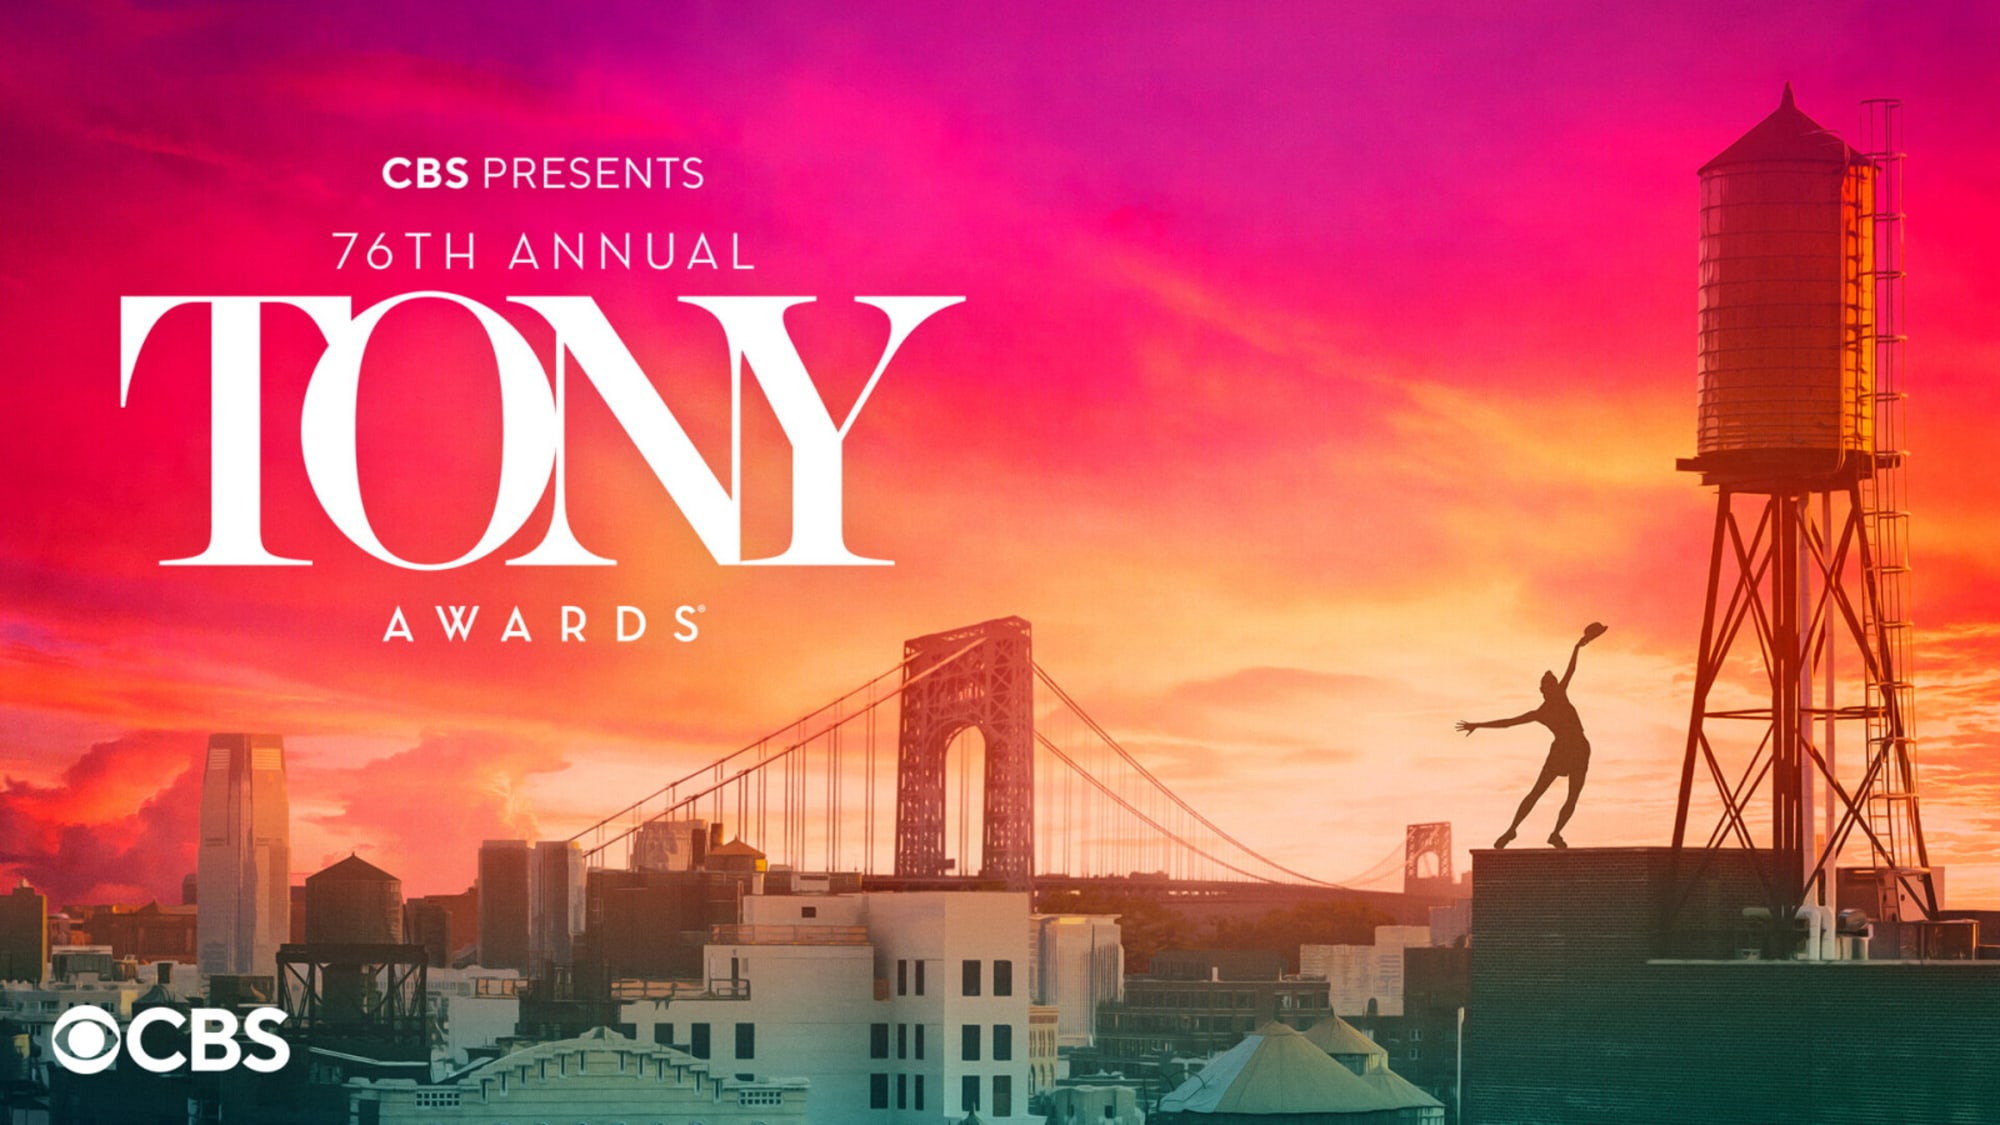 Who is hosting the 2023 Tony Awards on CBS?